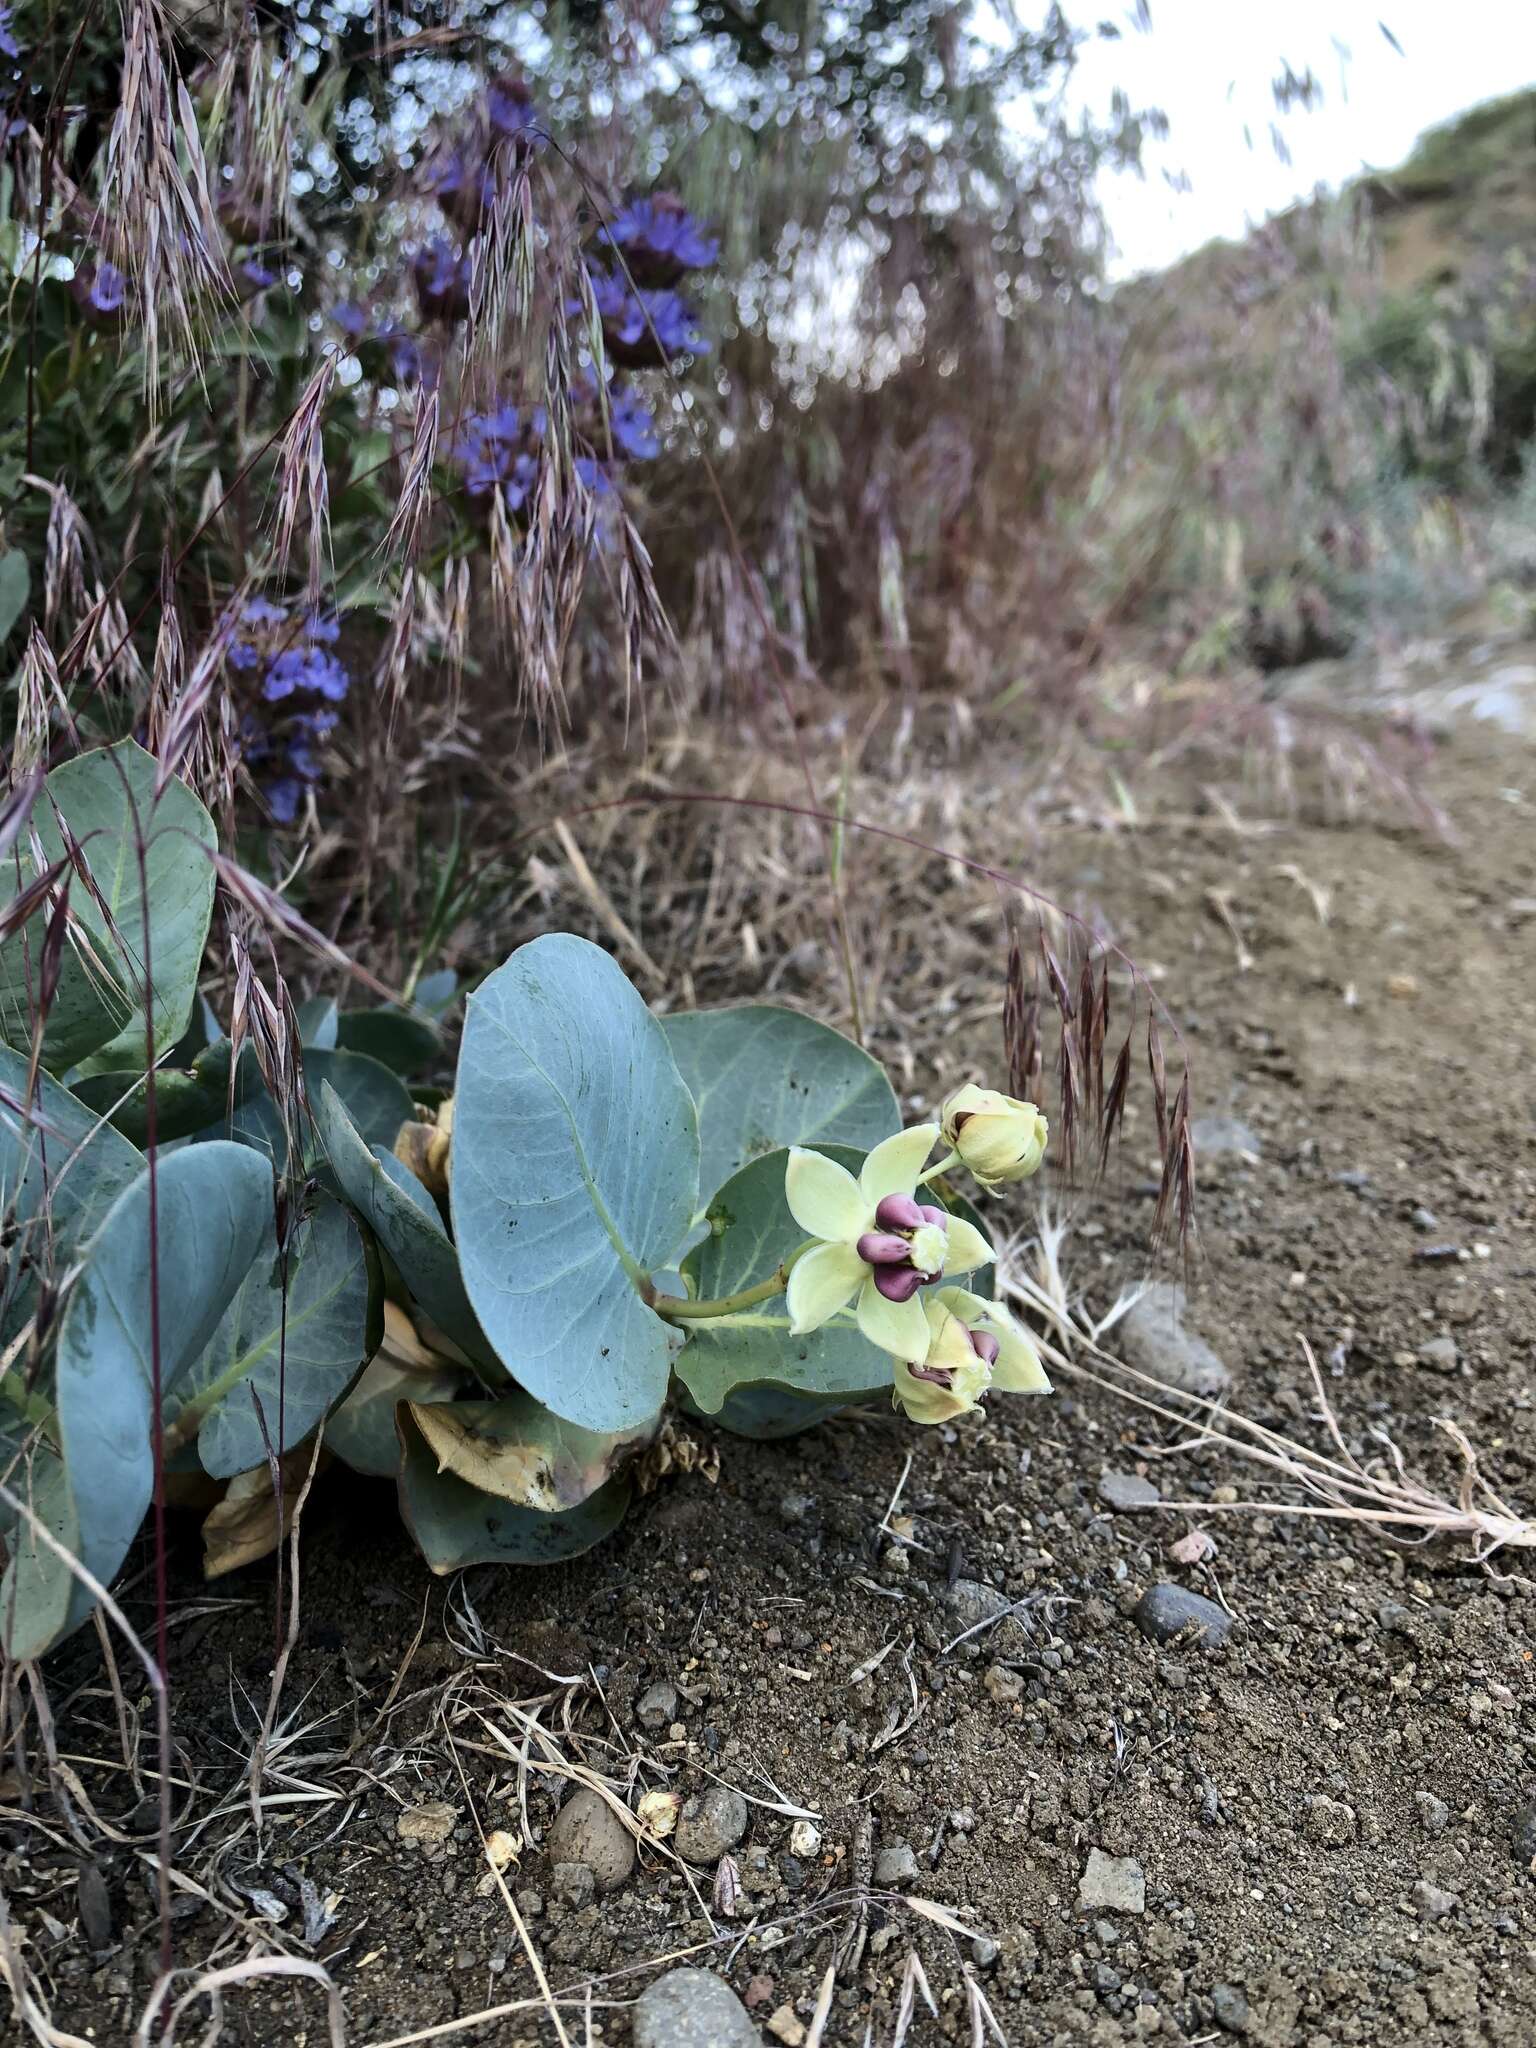 Image of Davis' milkweed